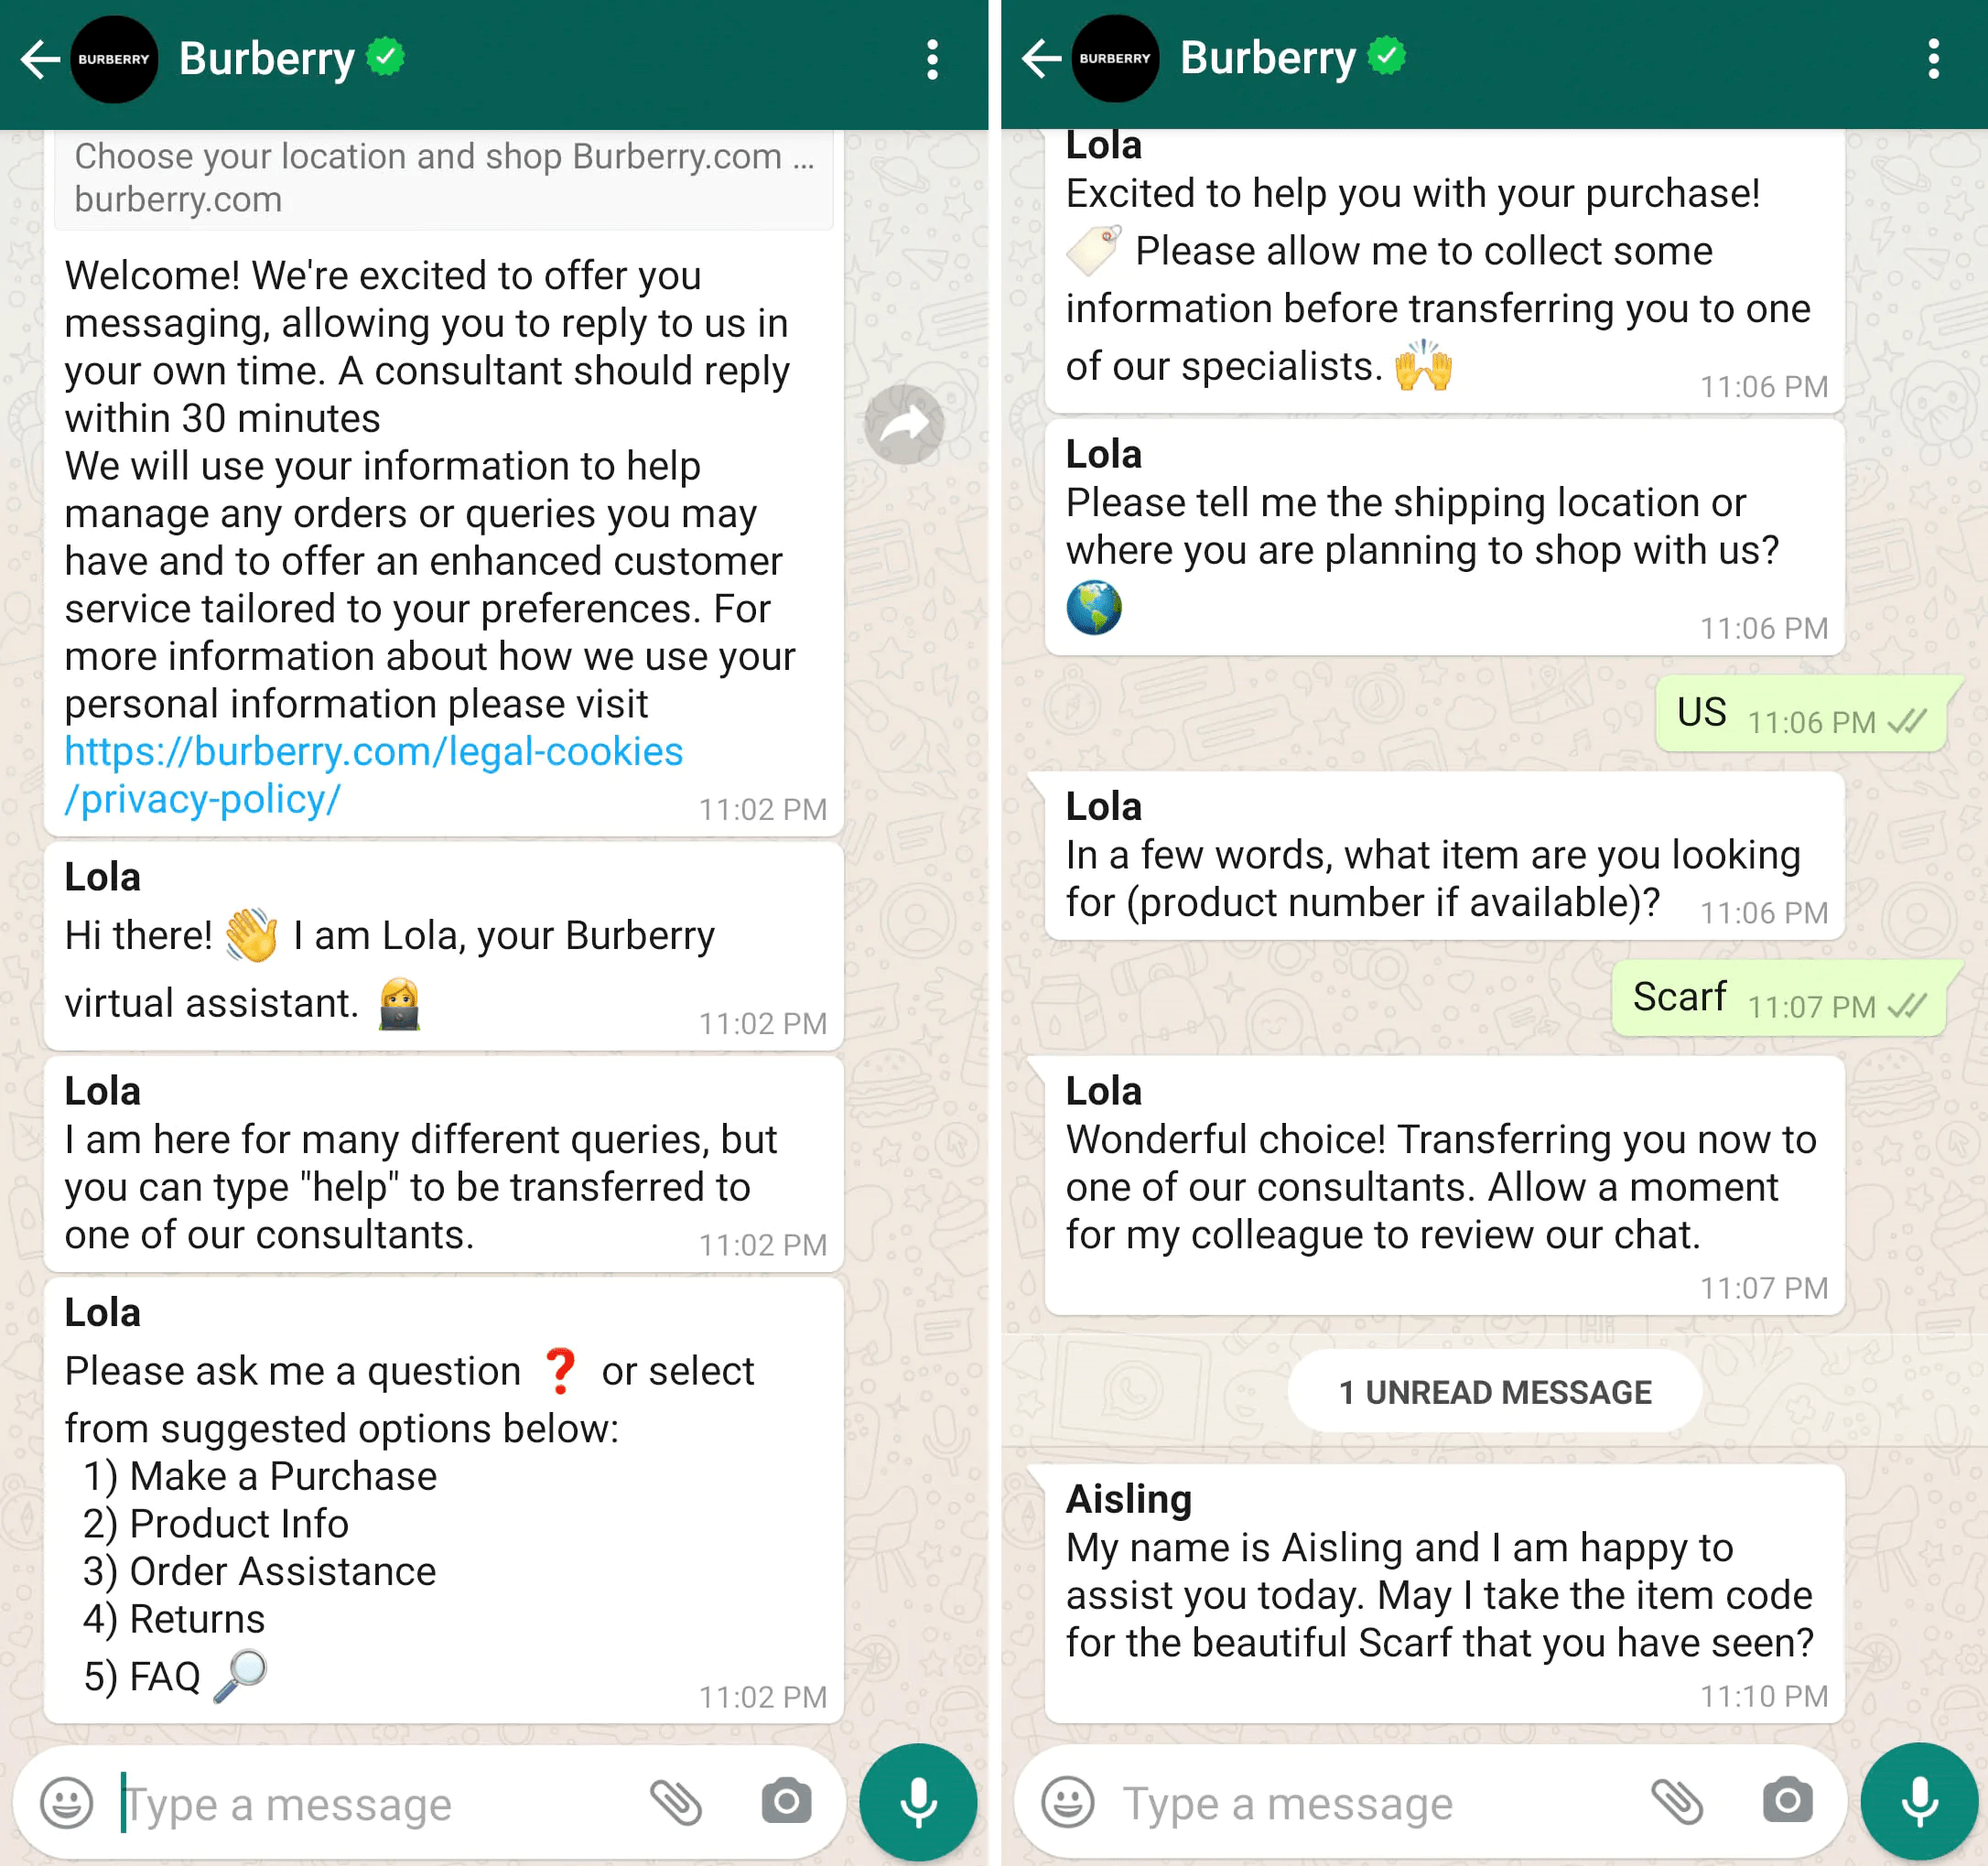 A Burberry usa o WhatsApp para fornecer consultas pessoais e ajuda